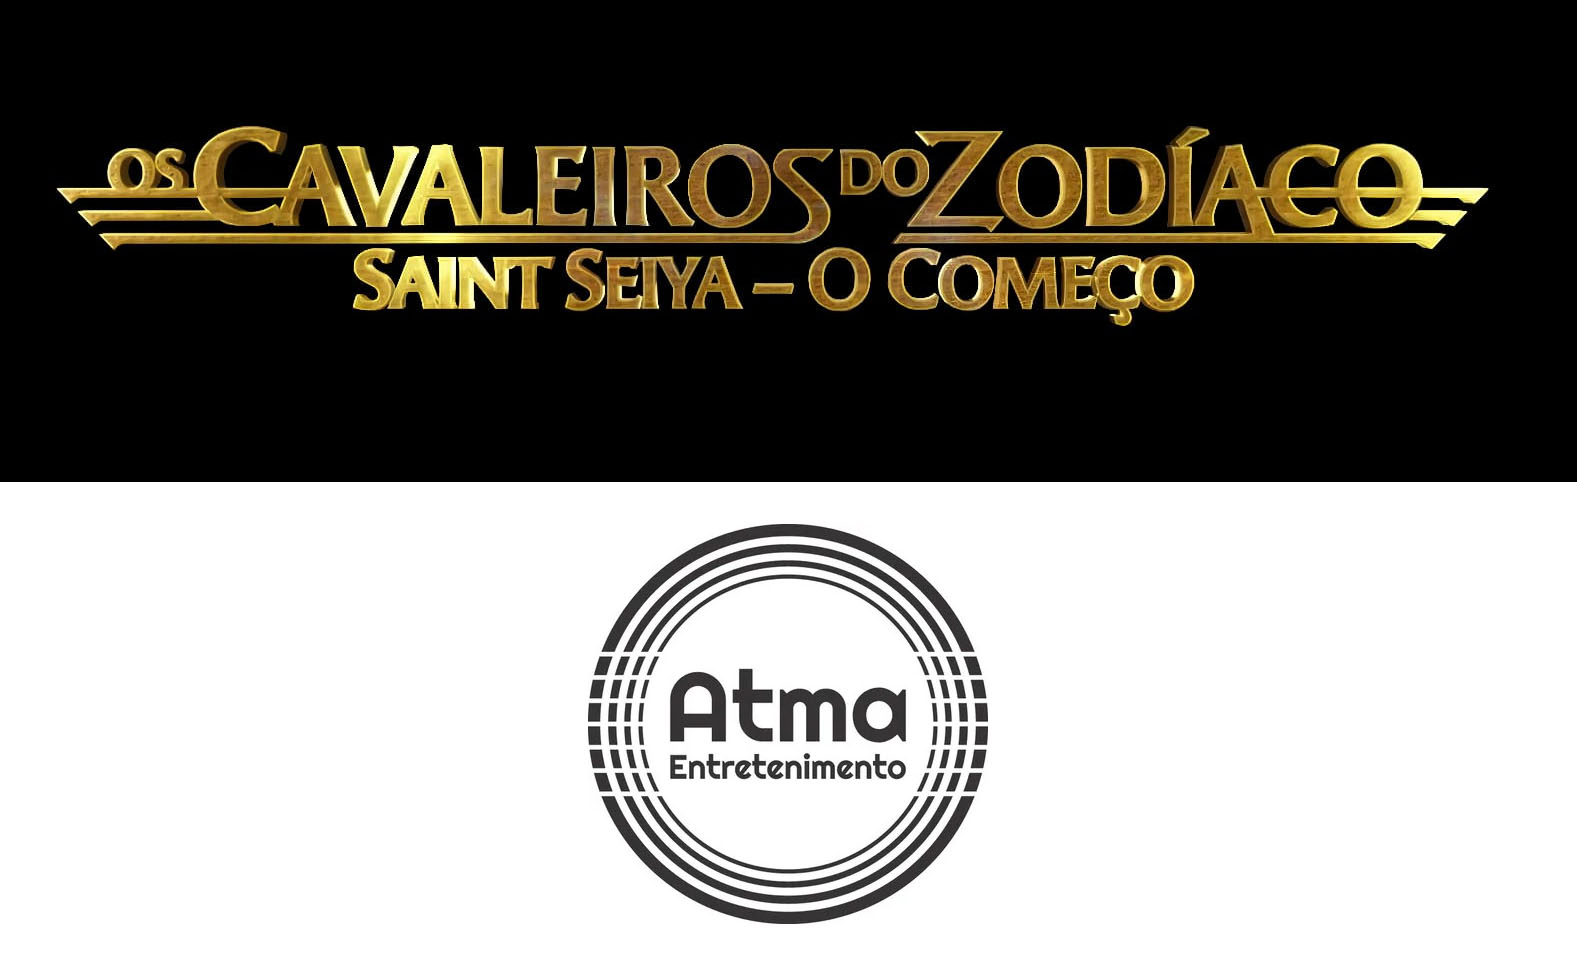 Live Action: filme dos Cavaleiros do Zodíaco estreia na HBO Max do Brasil  em dezembro! - Os Cavaleiros do Zodíaco - CavZodiaco.com.br